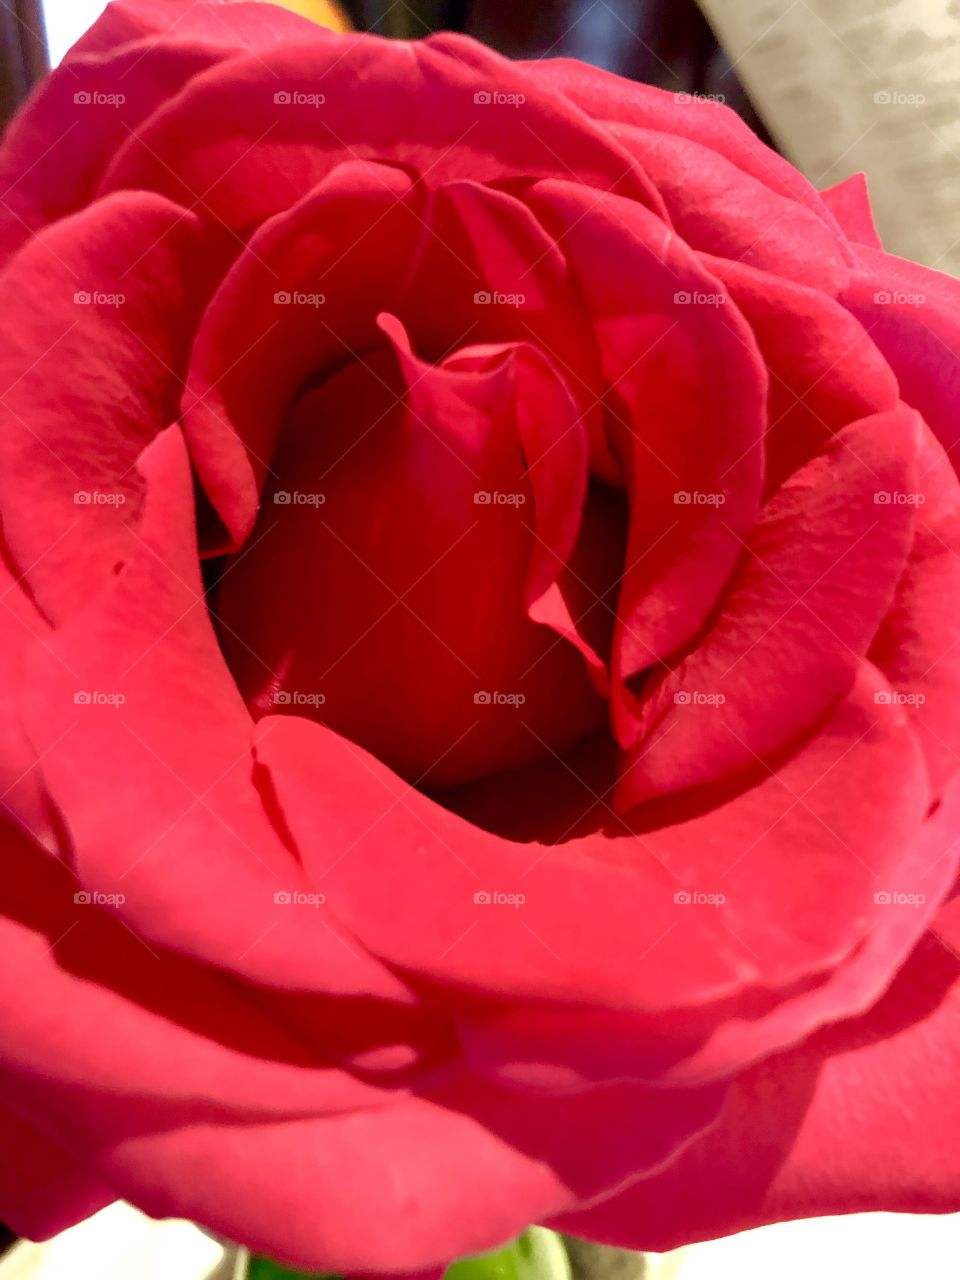 Large rose